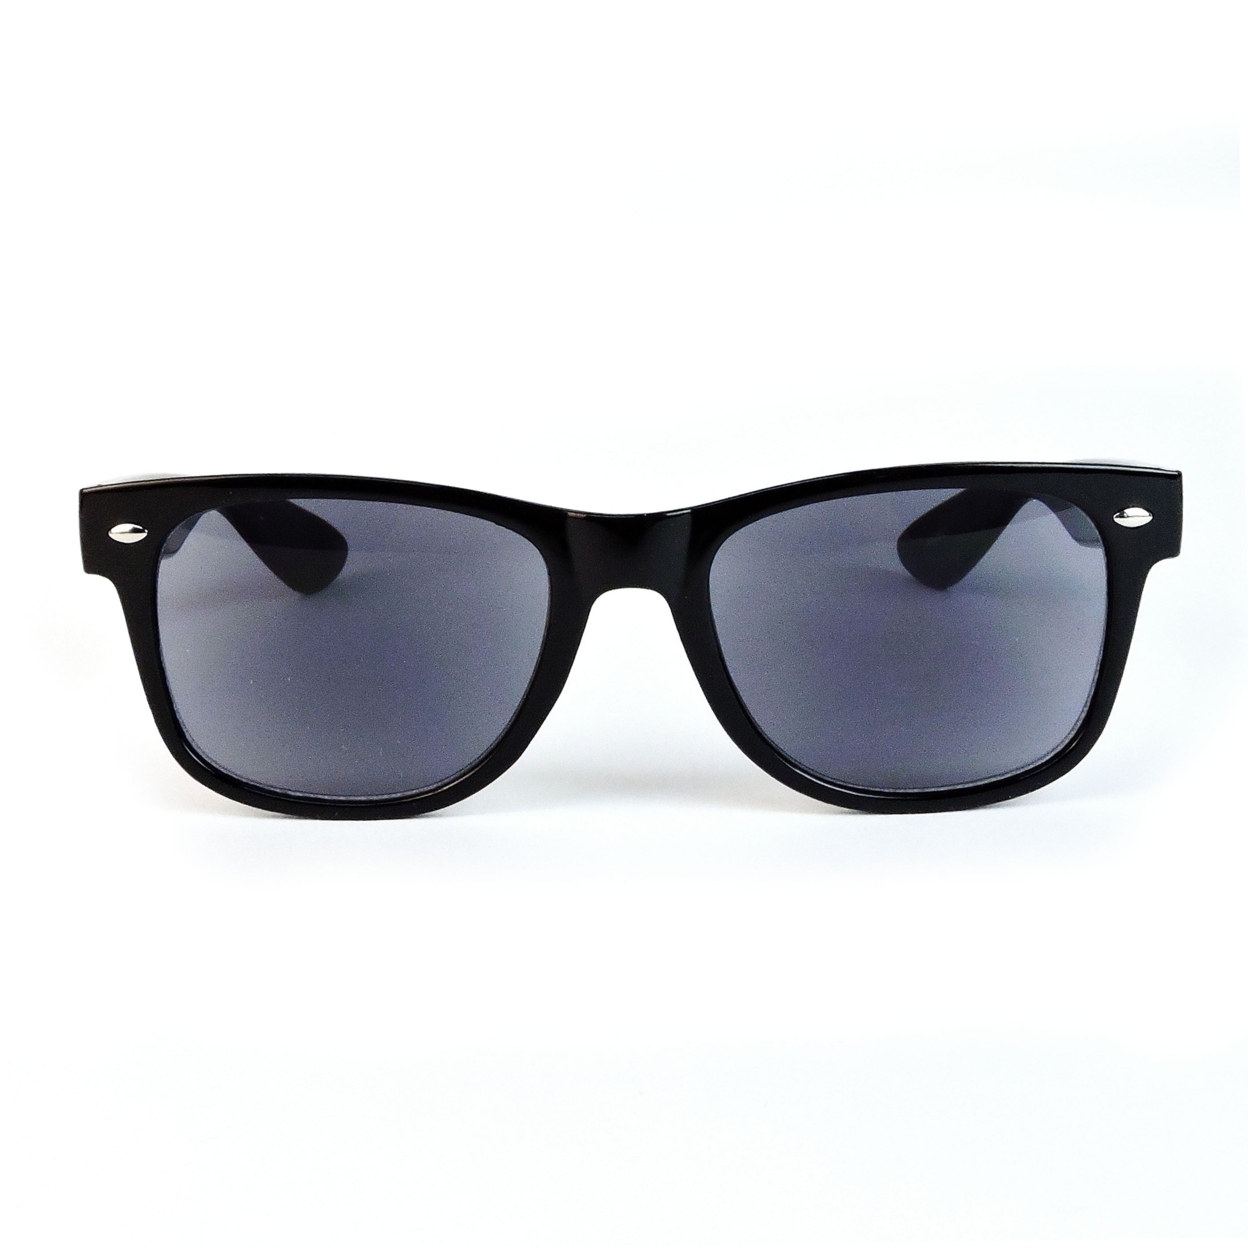 Sun Readers Full Lens Classic Frame 80's Retro Style Reading Sunglasses - Tortoise, +1.50